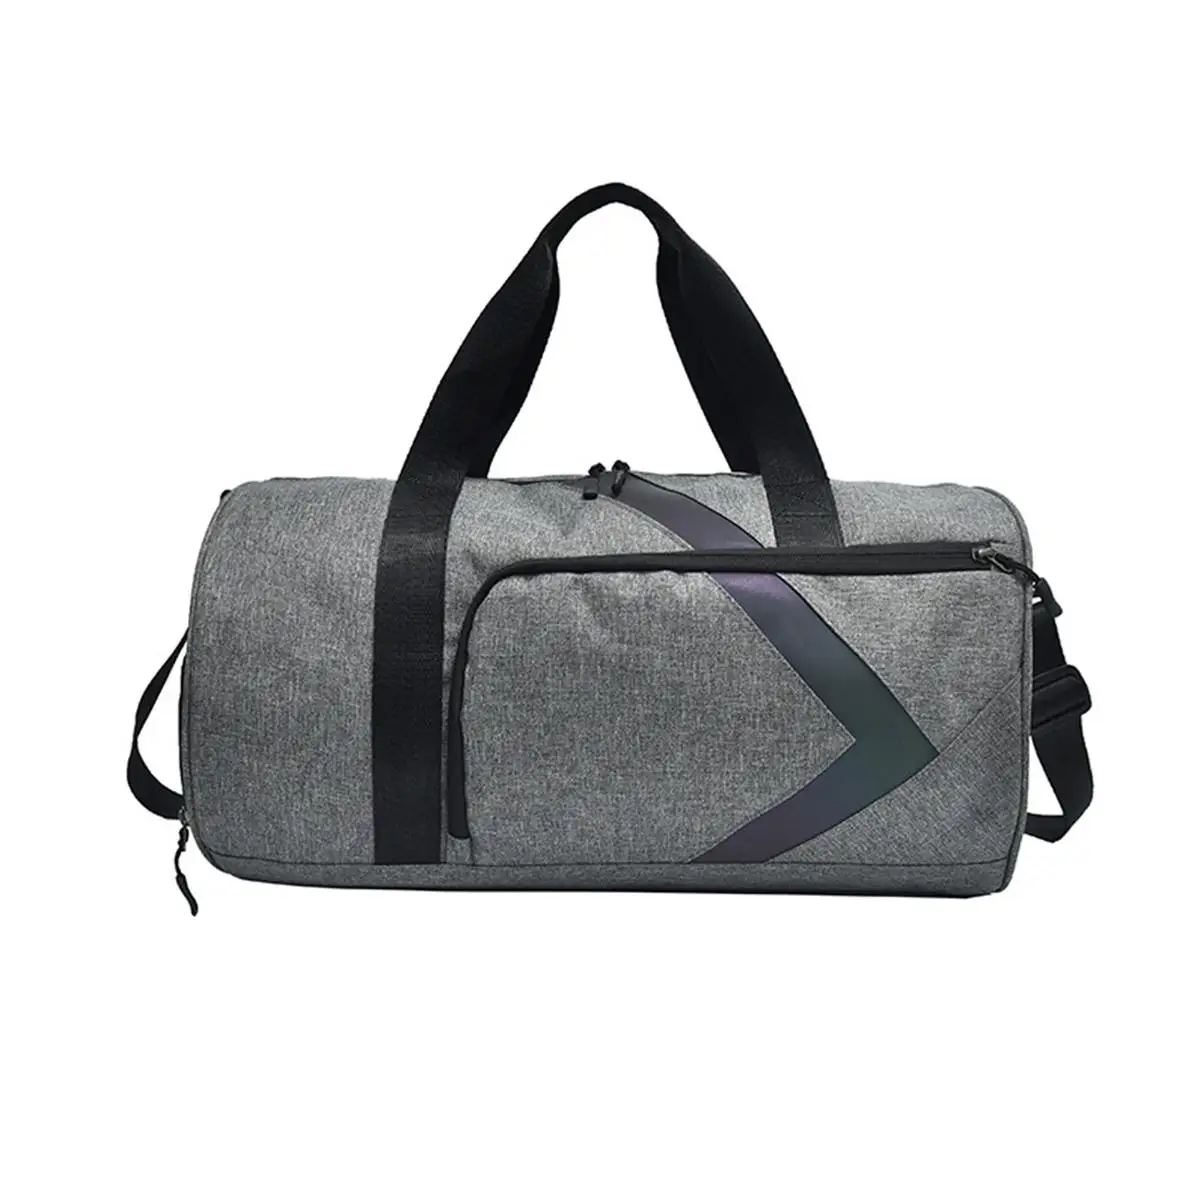 Отделение для сухого и мокрого фитнеса, сумка из ткани Оксфорд, регулируемый ремень для разборки, сумка на плечо, сумка унисекс - Цвет: Grey